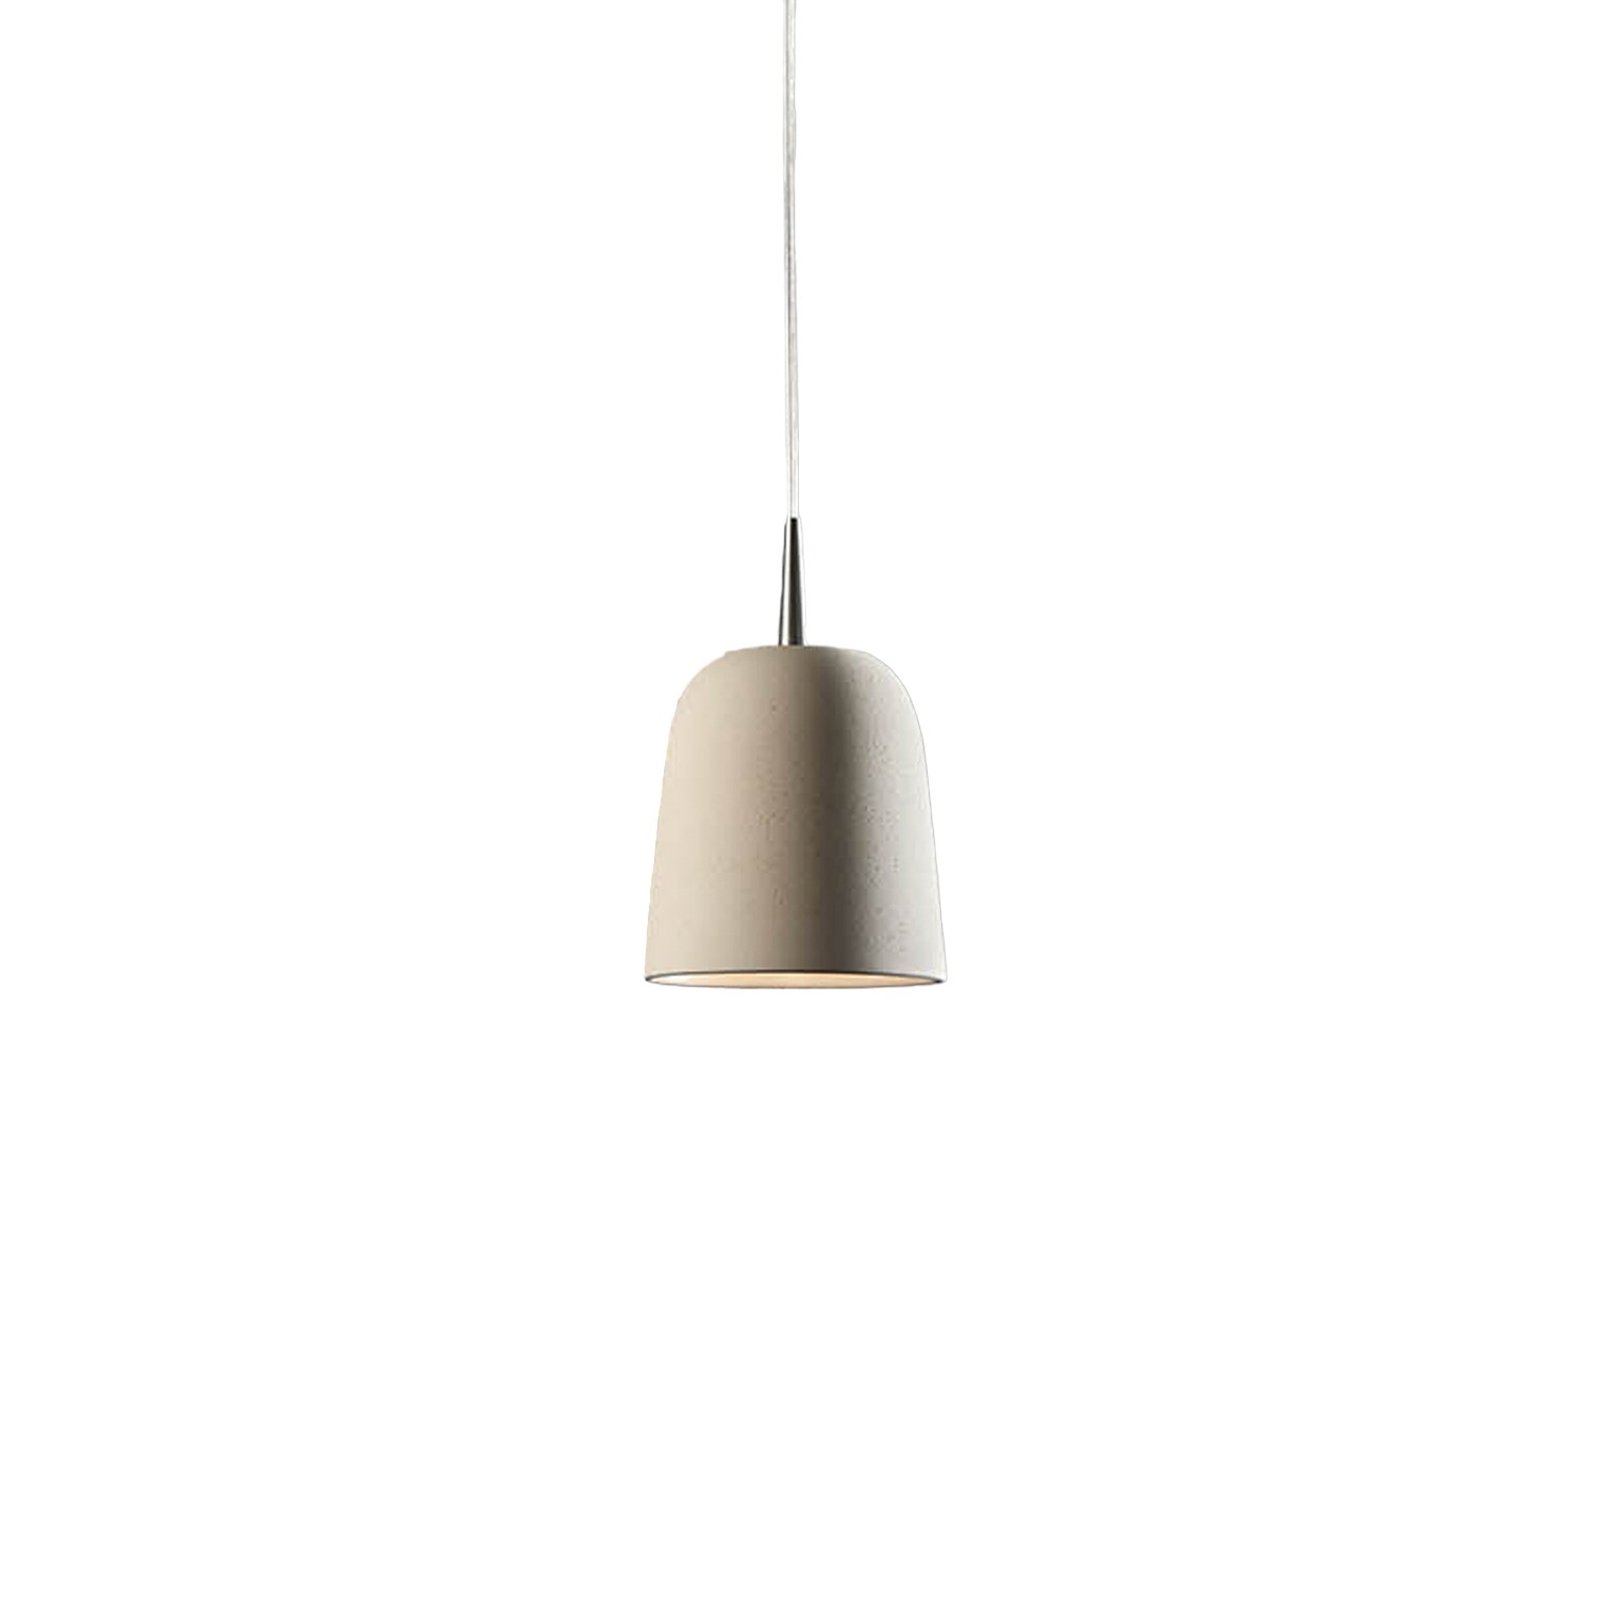 Hanglamp Clavio S 1-lamp In Aluminium/Crème